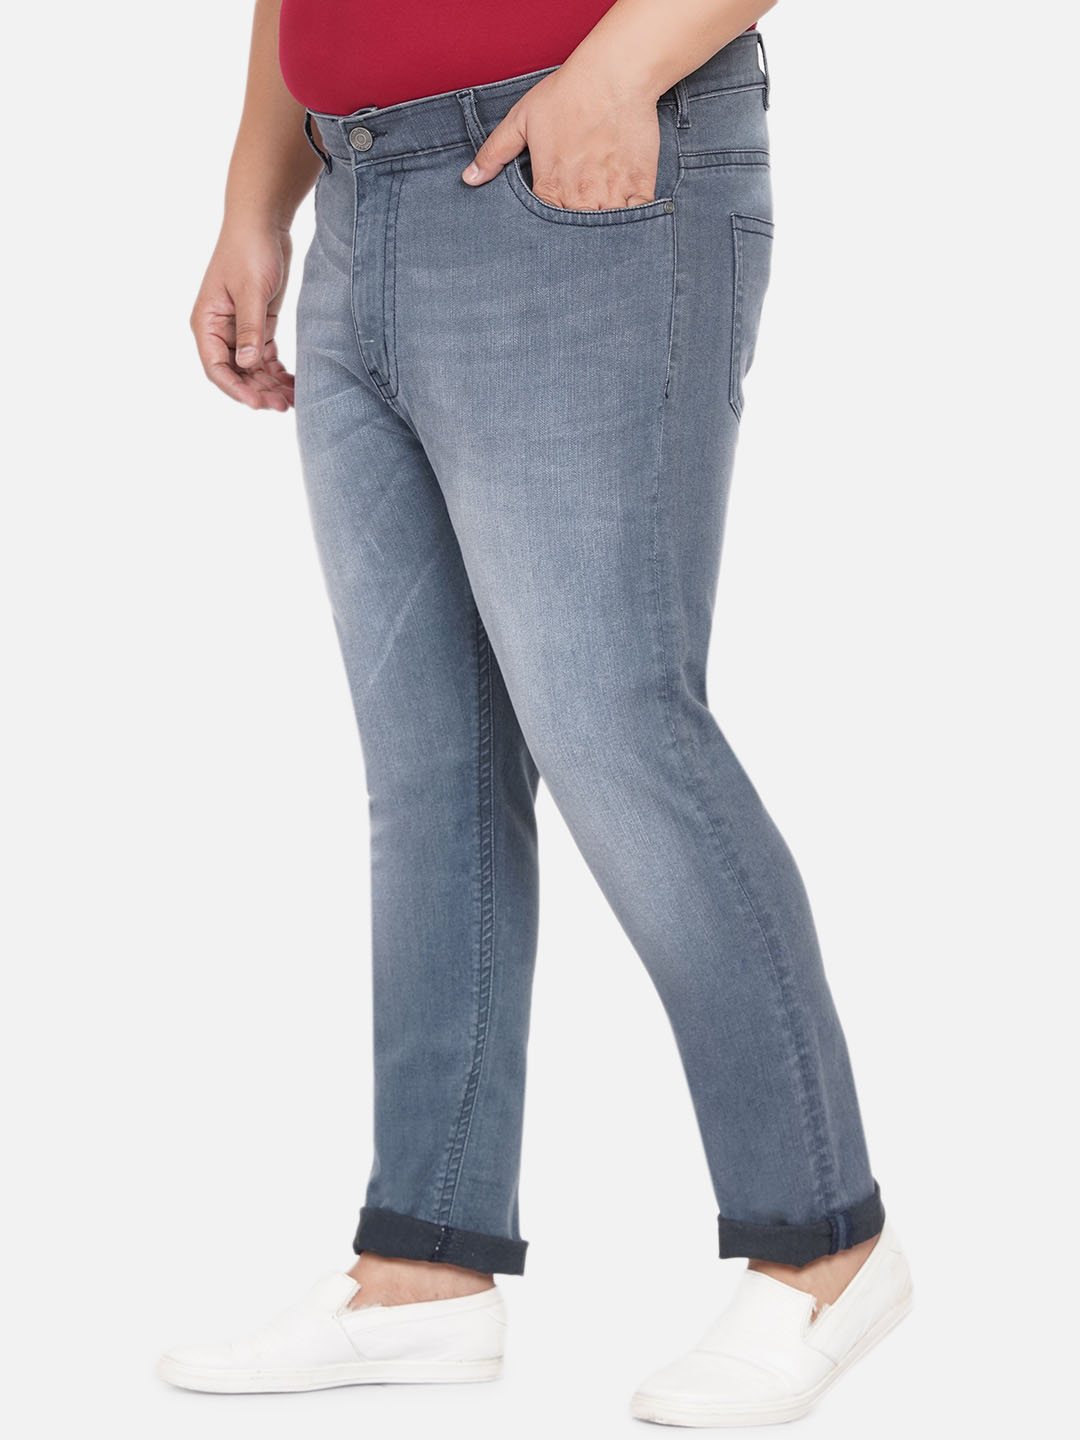 bottomwear/jeans/JPJ12254/jpj12254-4.jpg